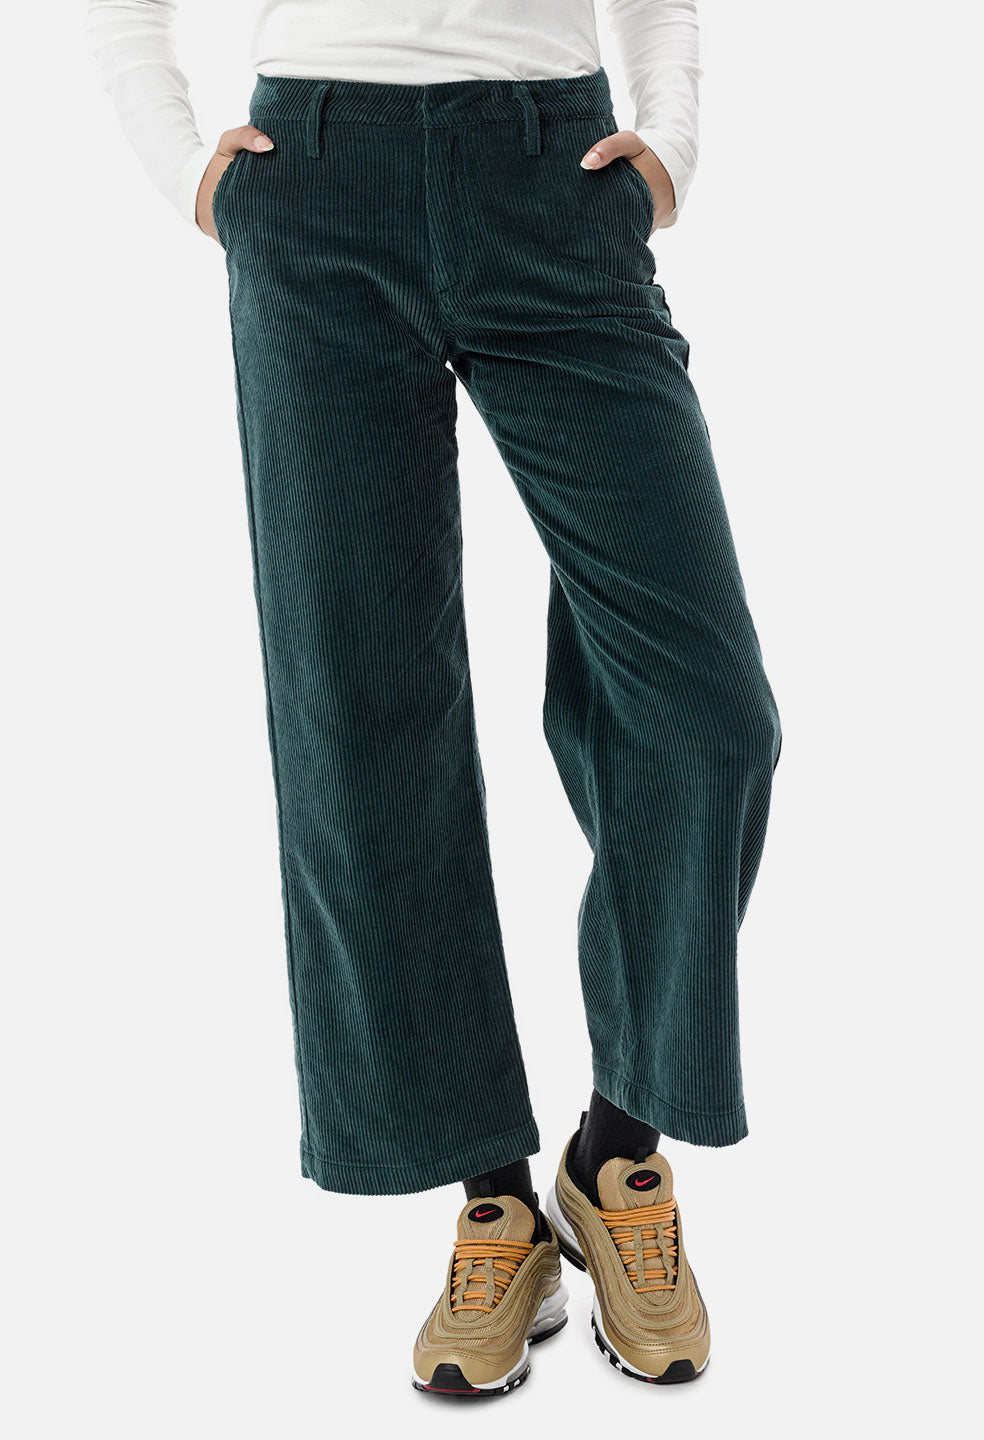 Women's High Waist Zipper Flare Leg Corduroy Pants Green 